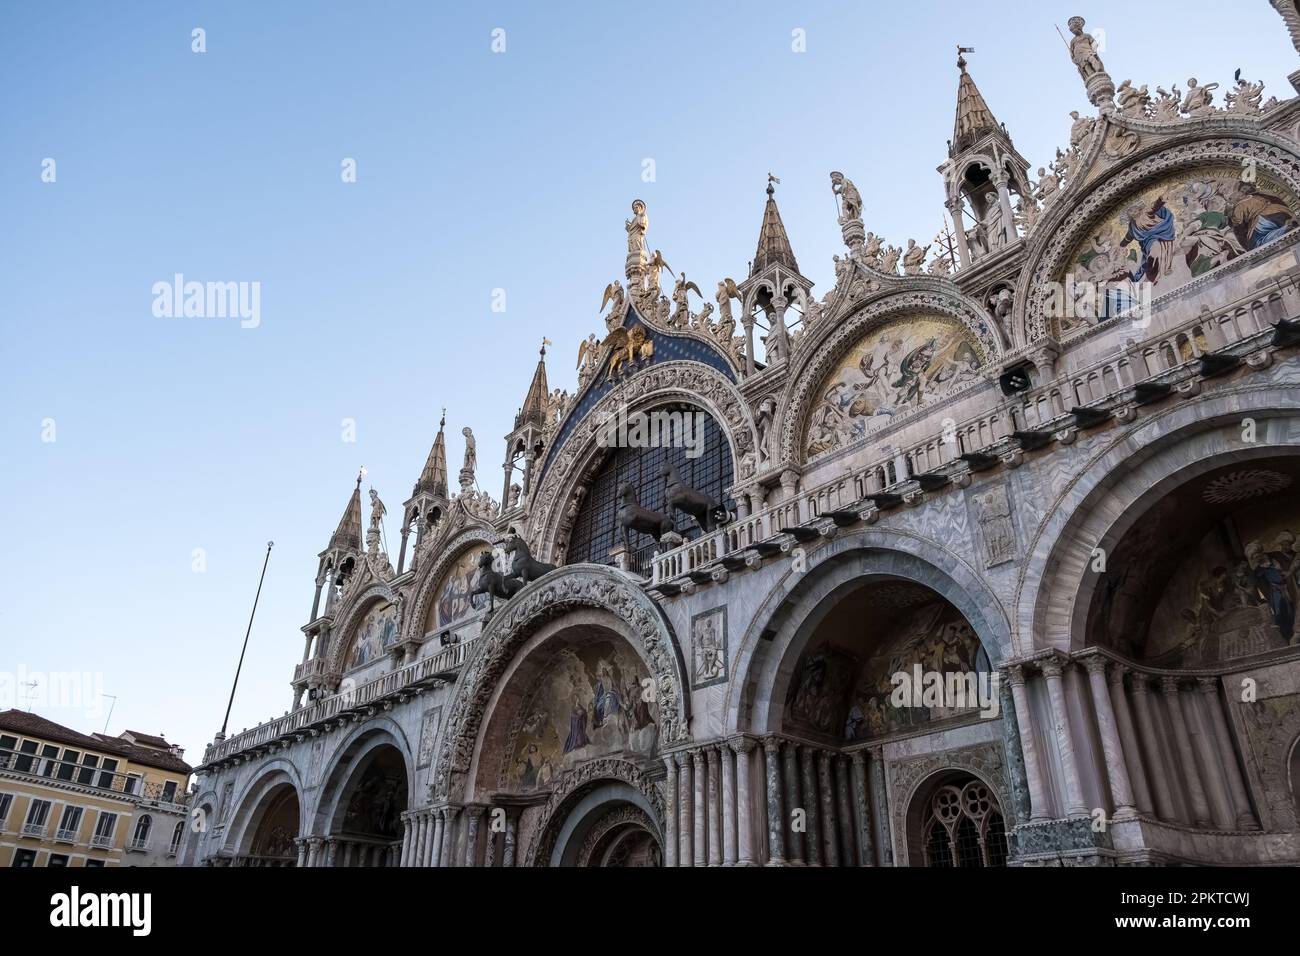 Détail architectural de la basilique cathédrale patriarcale Saint-Marc, communément appelée basilique Saint-Marc , l'église cathédrale de Venise Banque D'Images